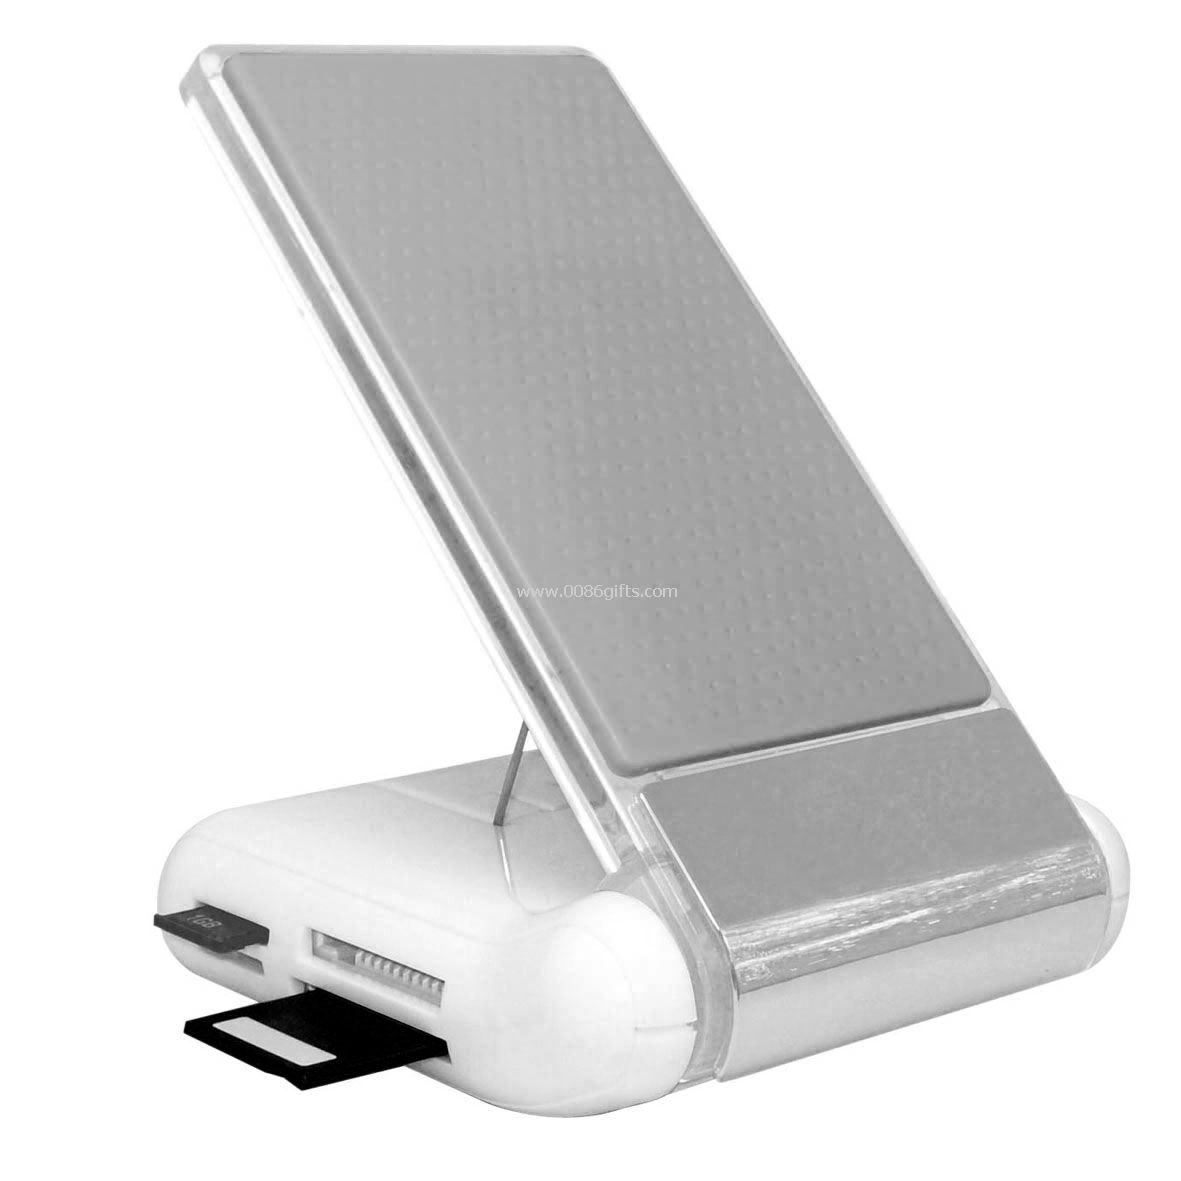 USB Hub kart okuyucu cep telefonu tutucusu